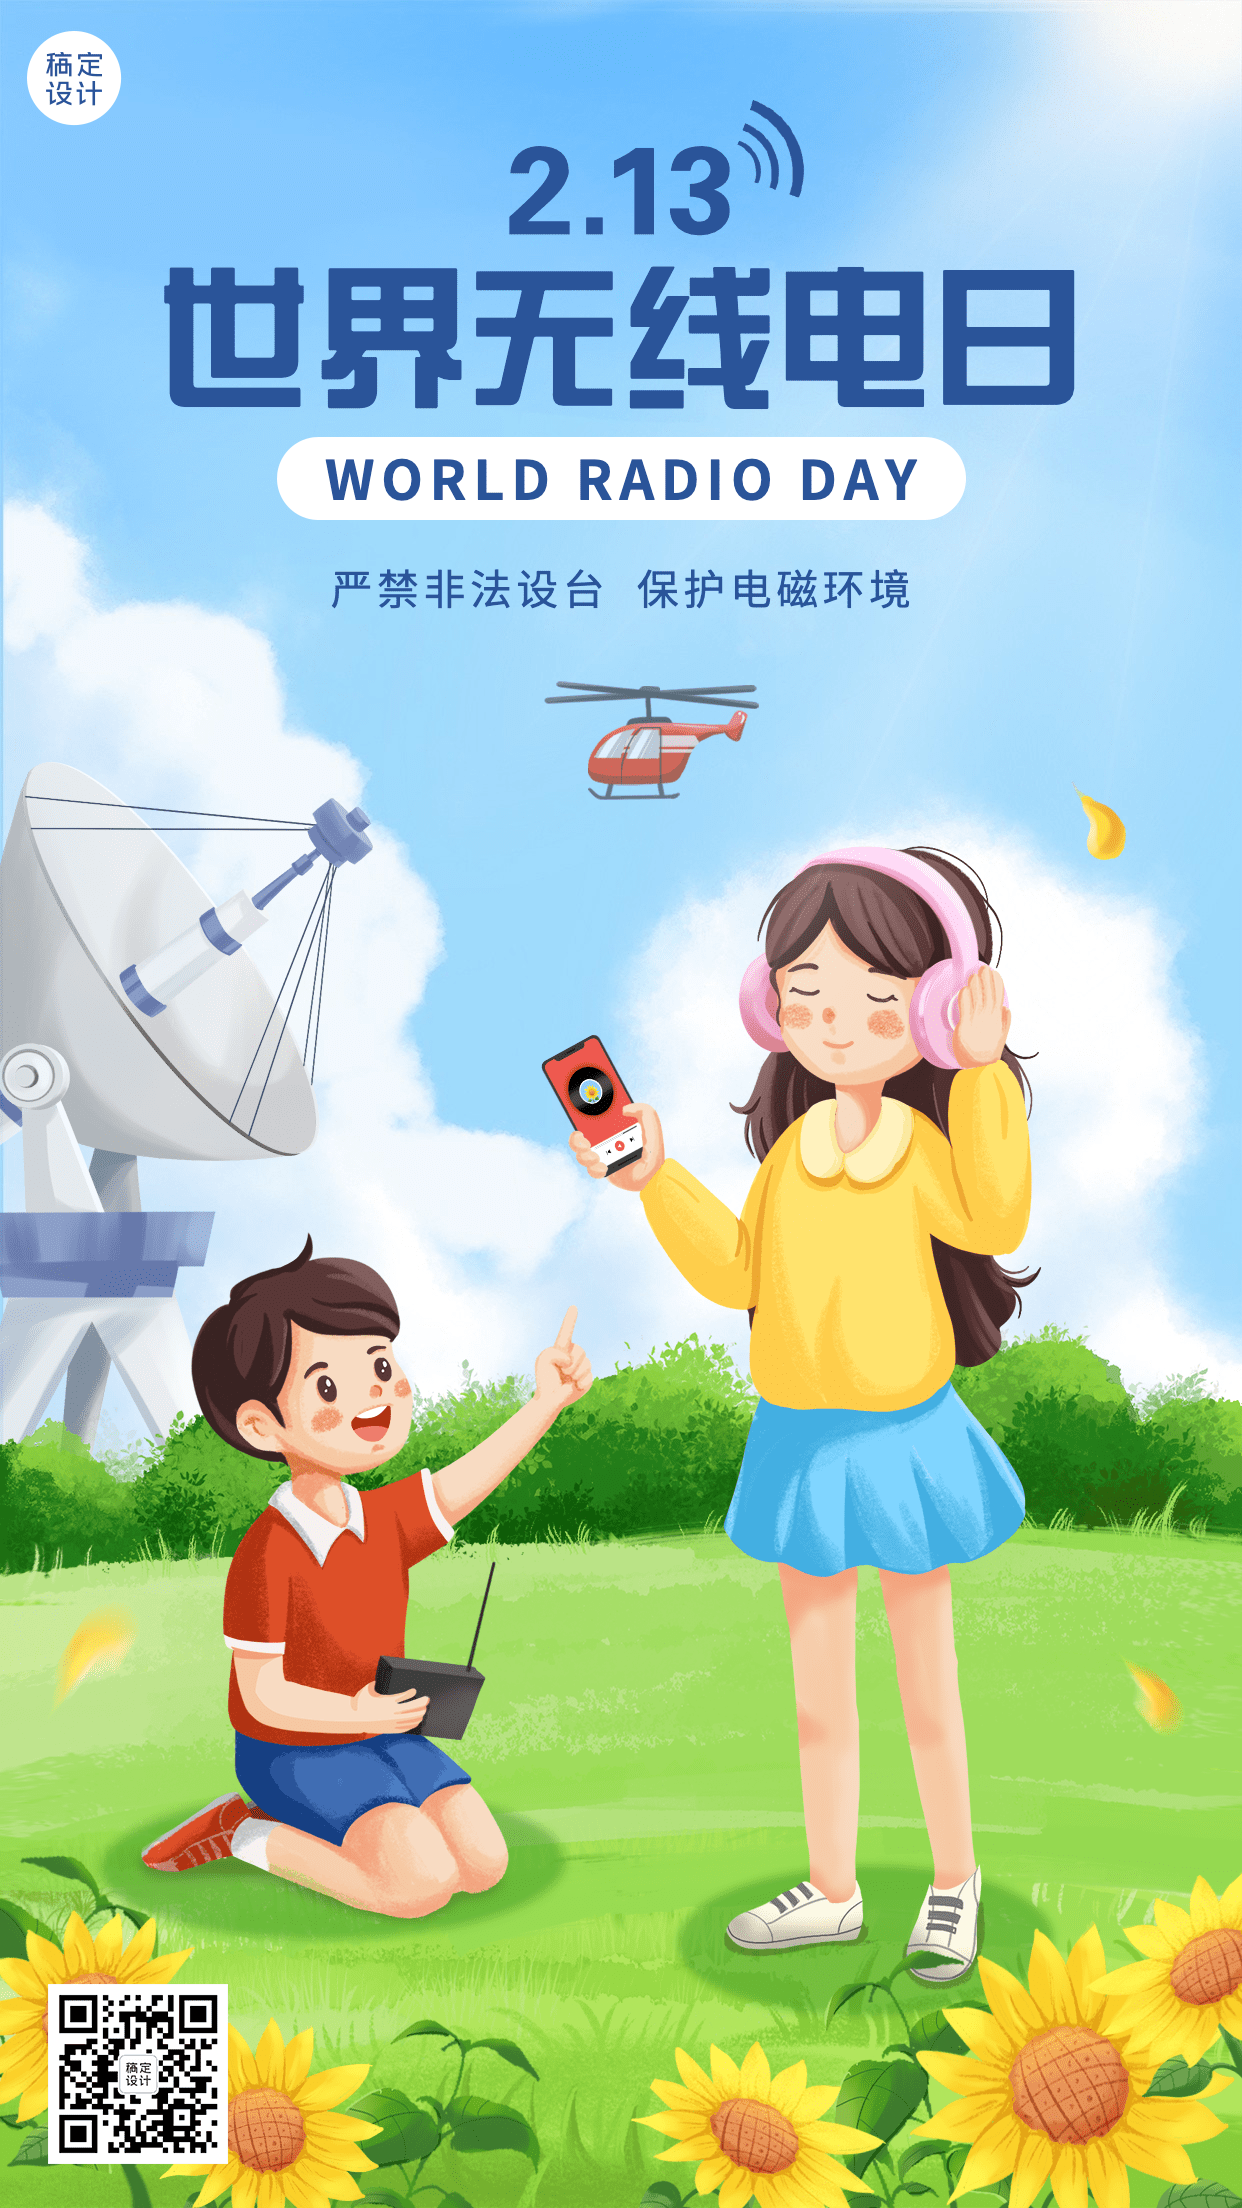 2.13世界无线电日节日宣传清新手绘手机海报